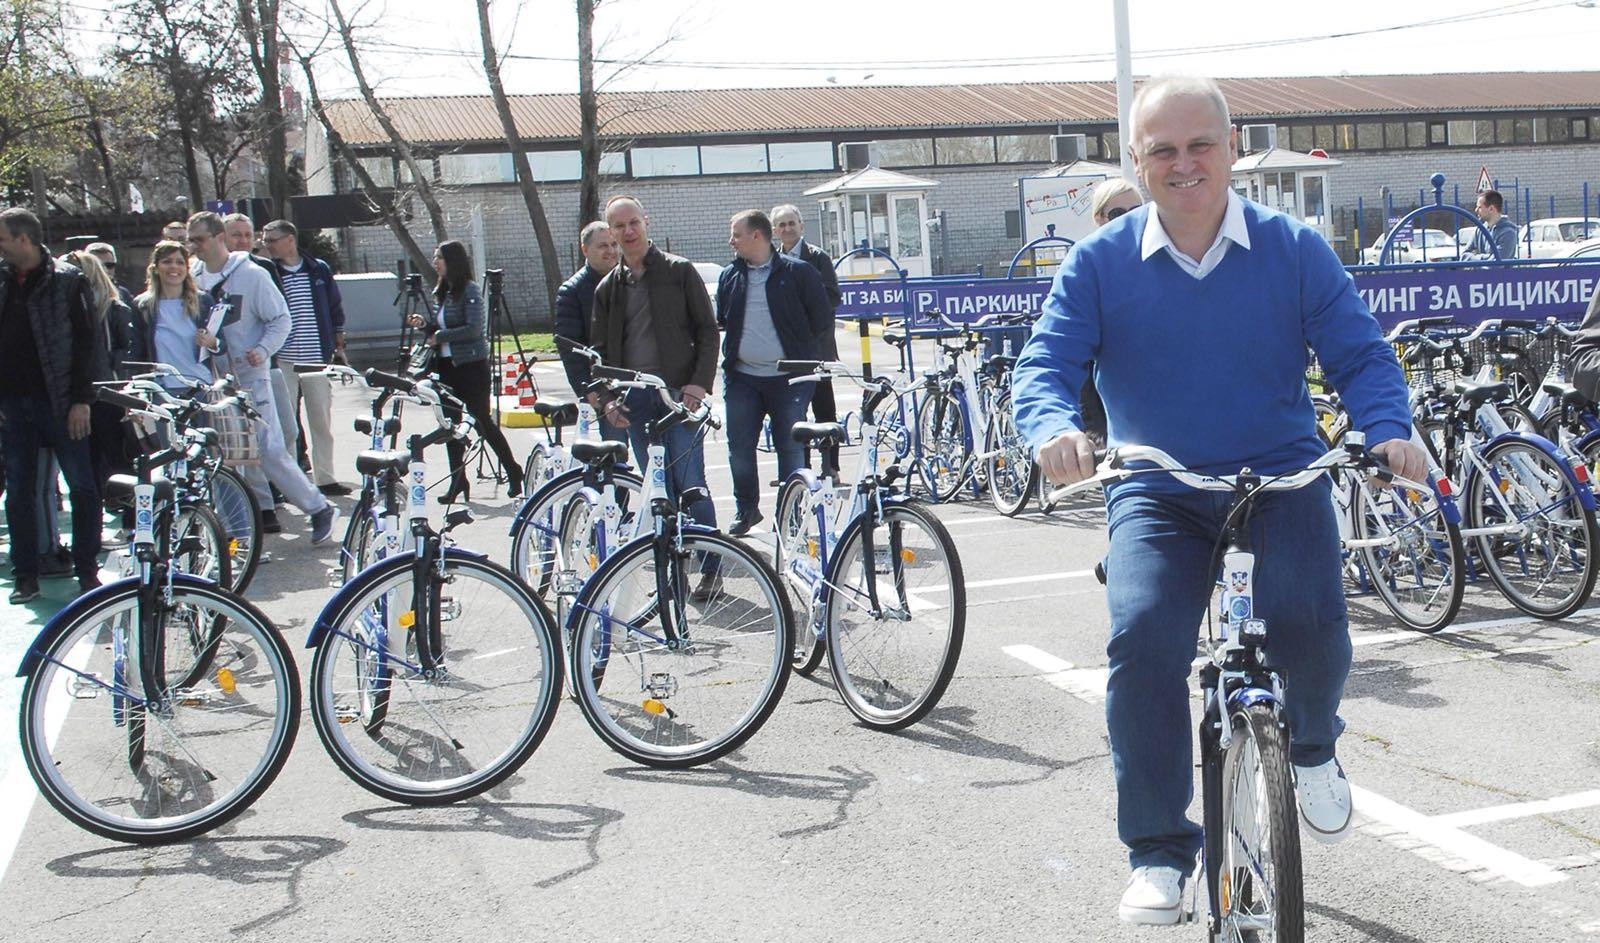 (FOTO) DOSTUPNO 450 BICIKALA U OKVIRU AKCIJE "PARKIRAJ I BICIKLIRAJ"! Vesić: To će biti doprinos da se razvija biciklistički saobraćaj u gradu